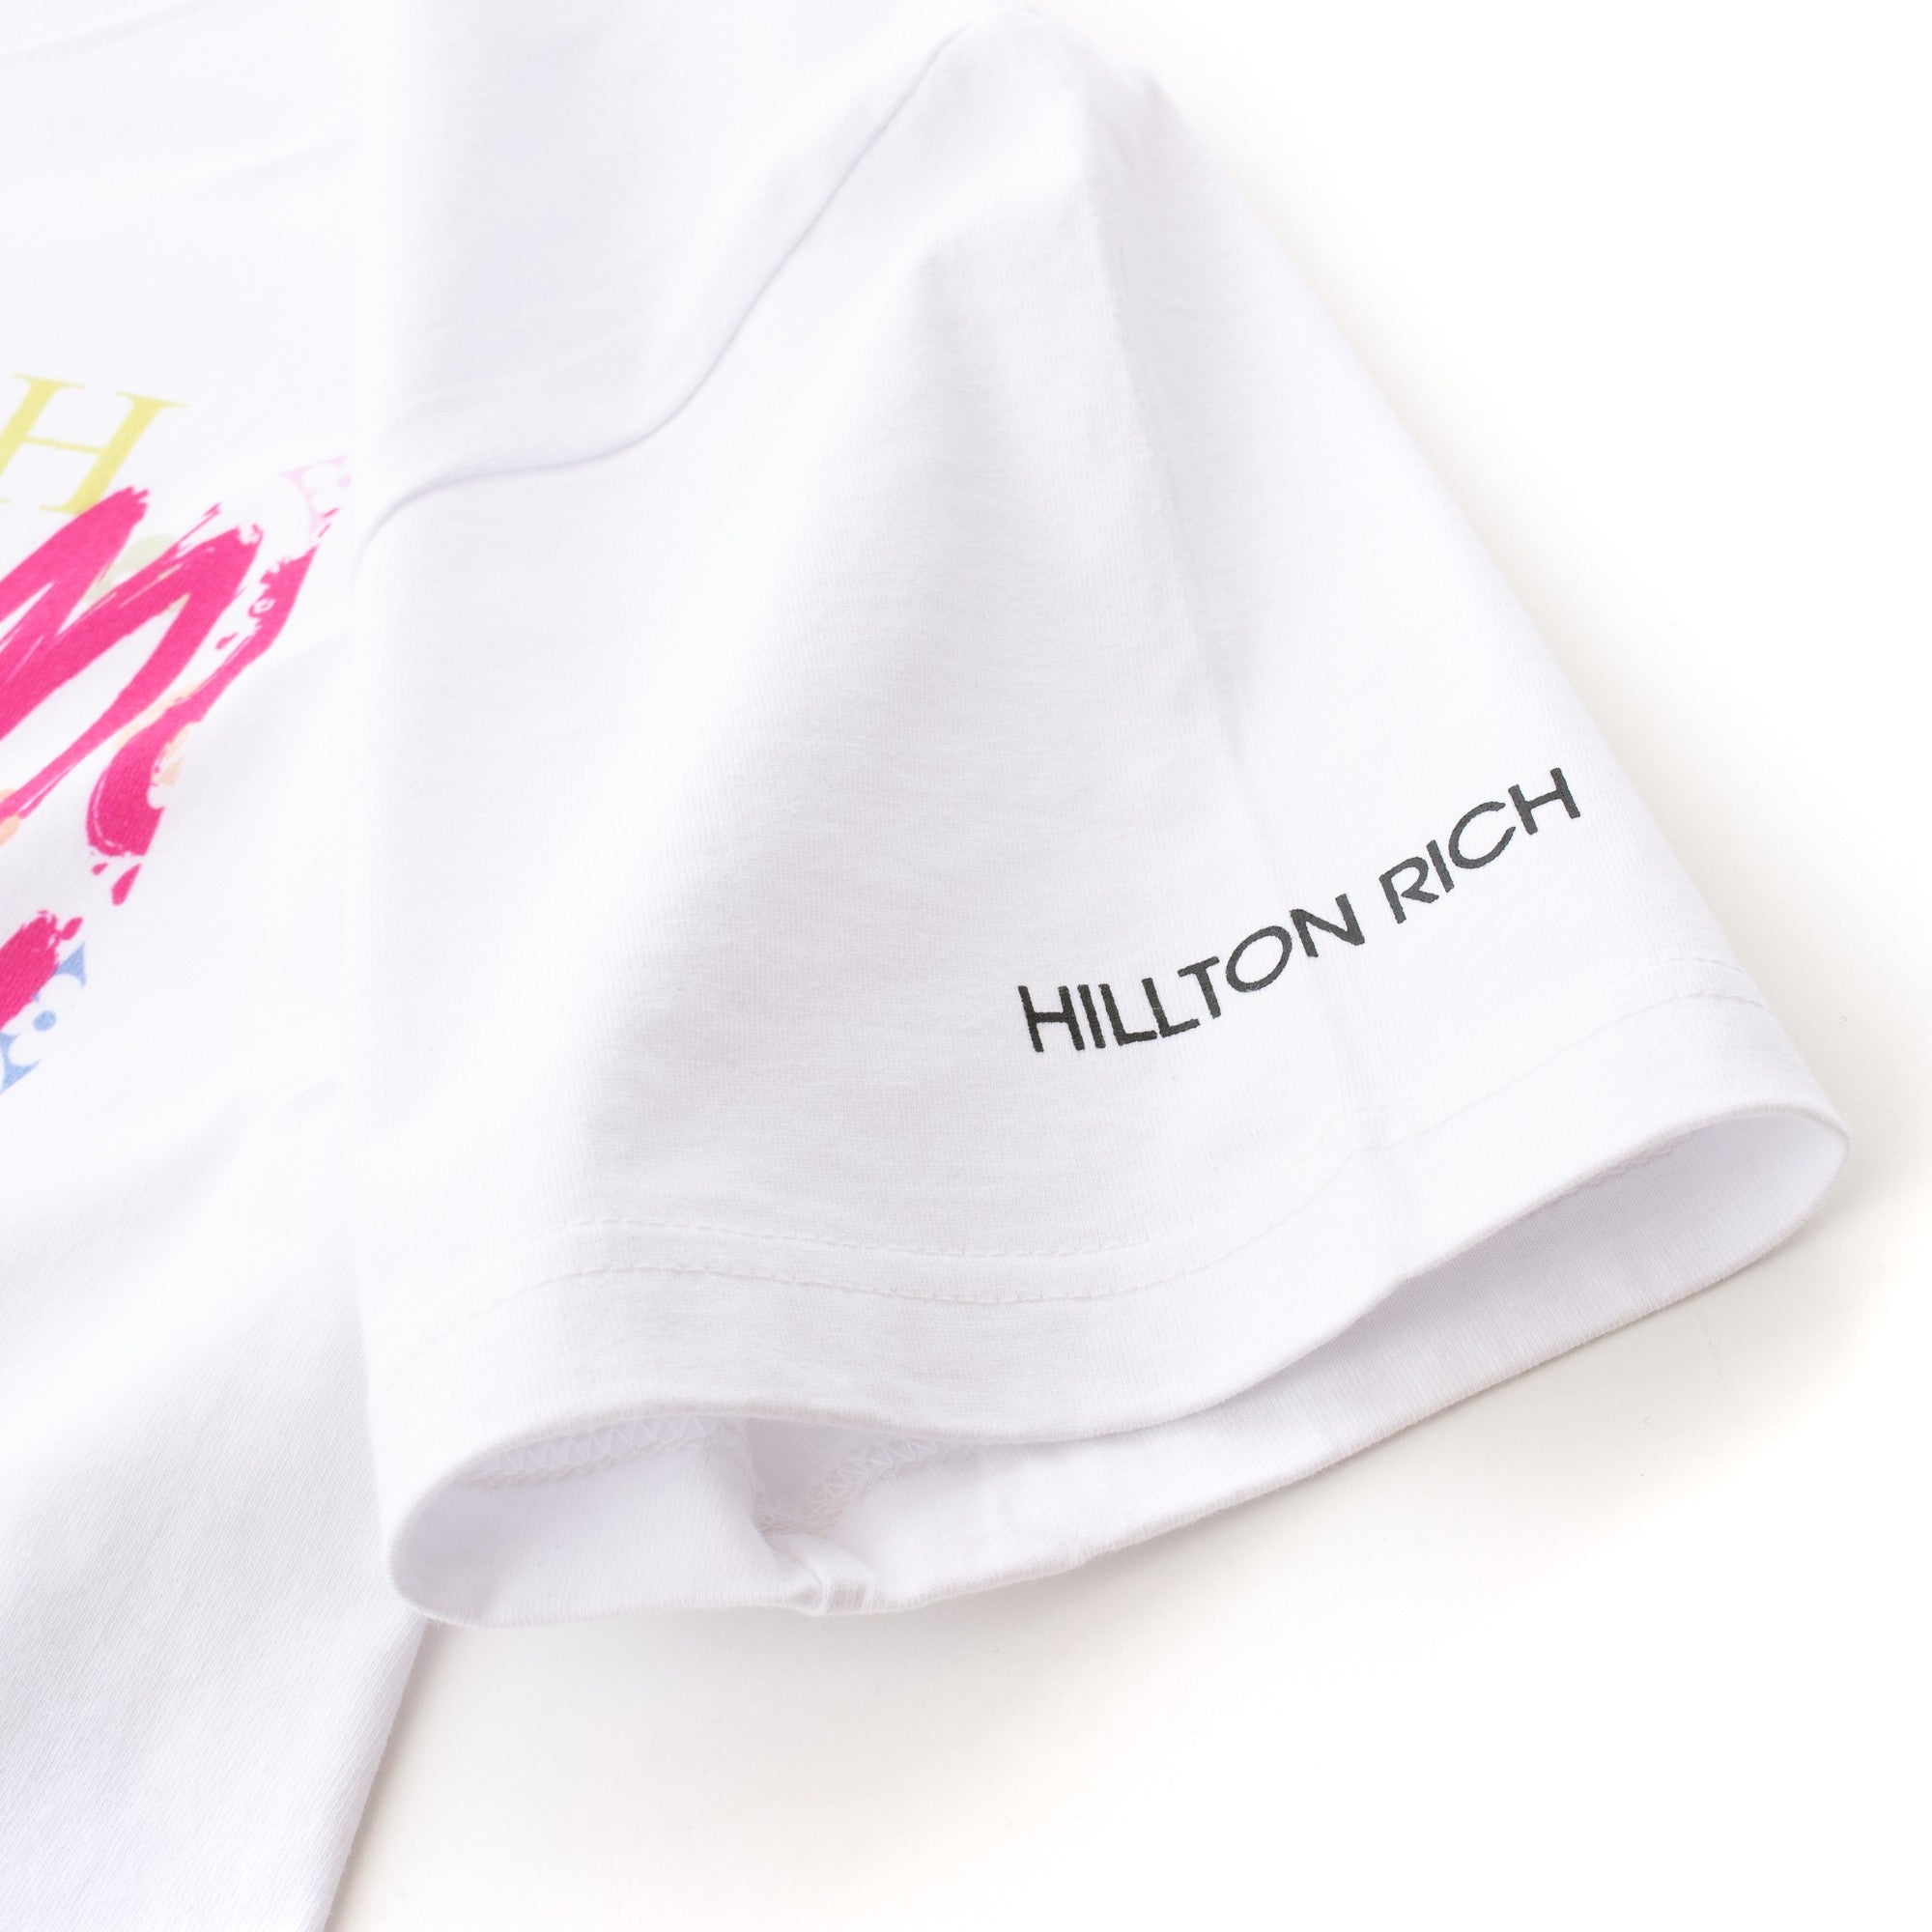 HILLTON RICH(ヒルトンリッチ）メンズ カットソー BUNNY Tシャツ